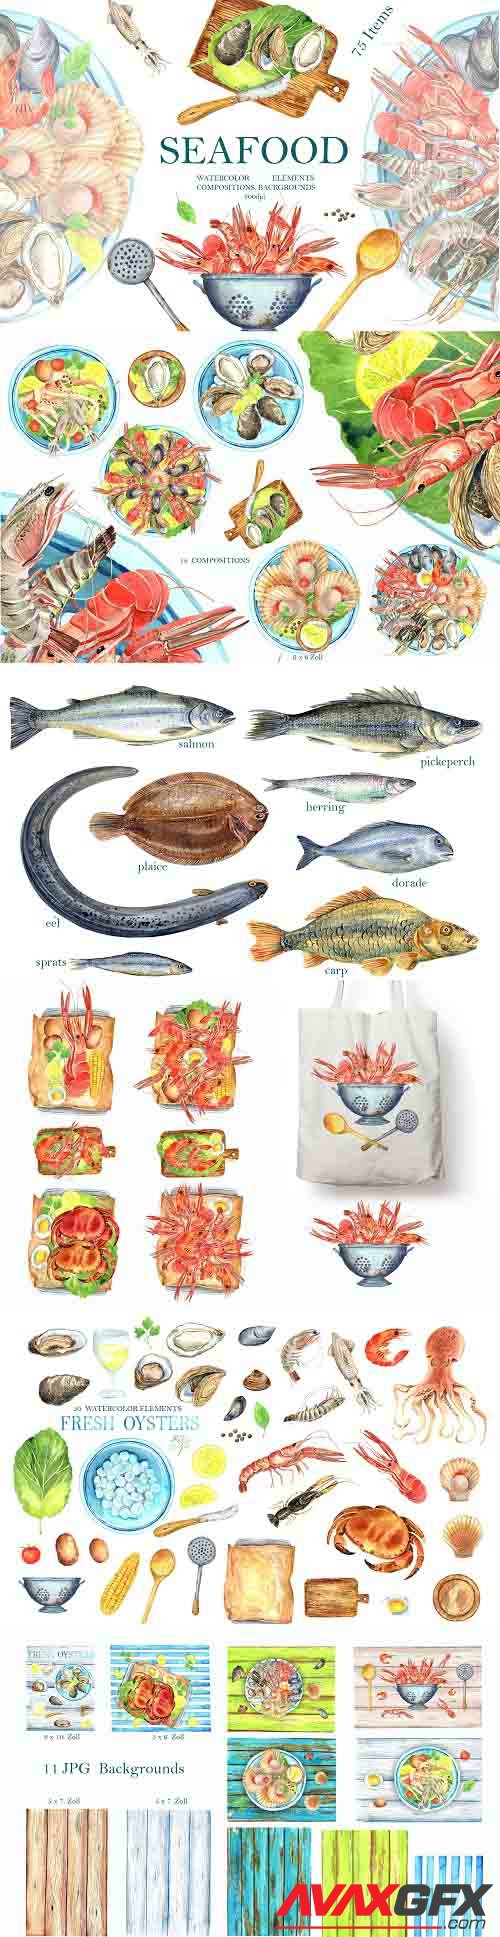 Seafood - 1309774